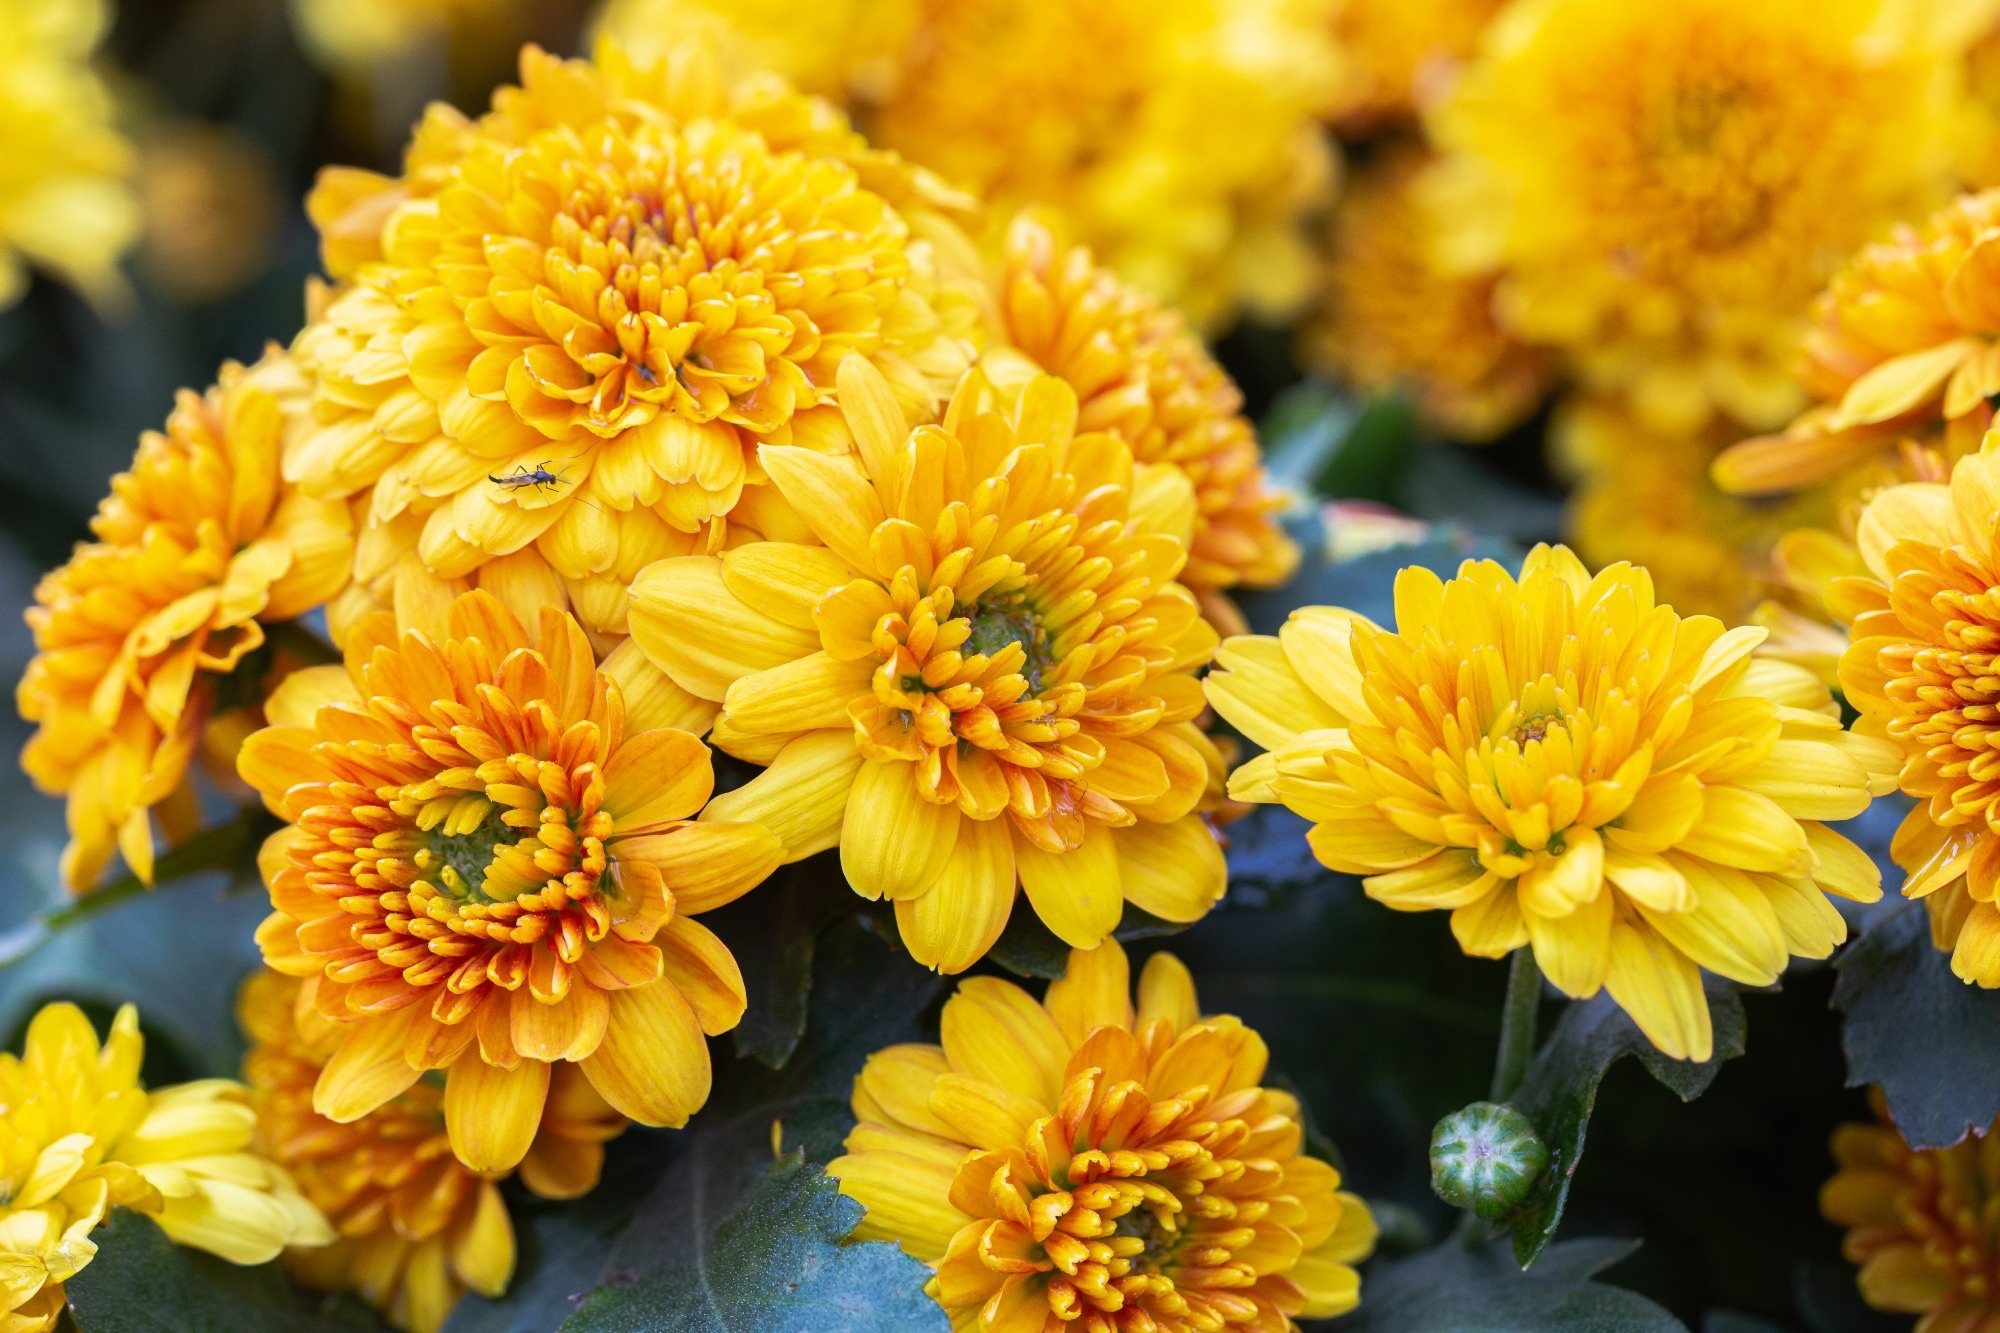 Chrysanthemums. Image Credit: Old Man Stocker / Shutterstock